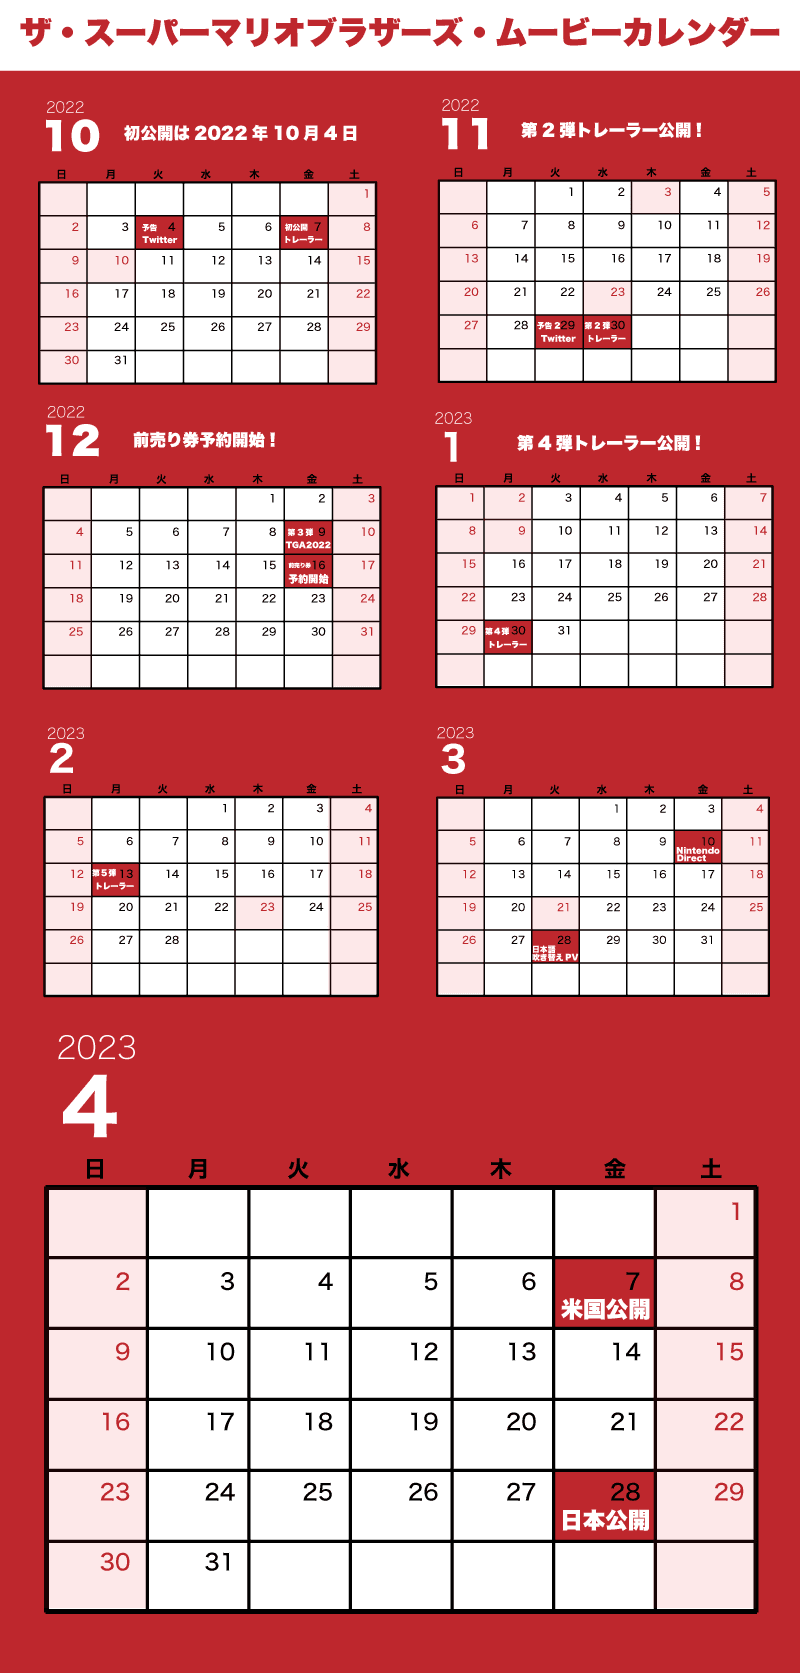 ザ・スーパーマリオブラザーズ・ムービー公開日カレンダー